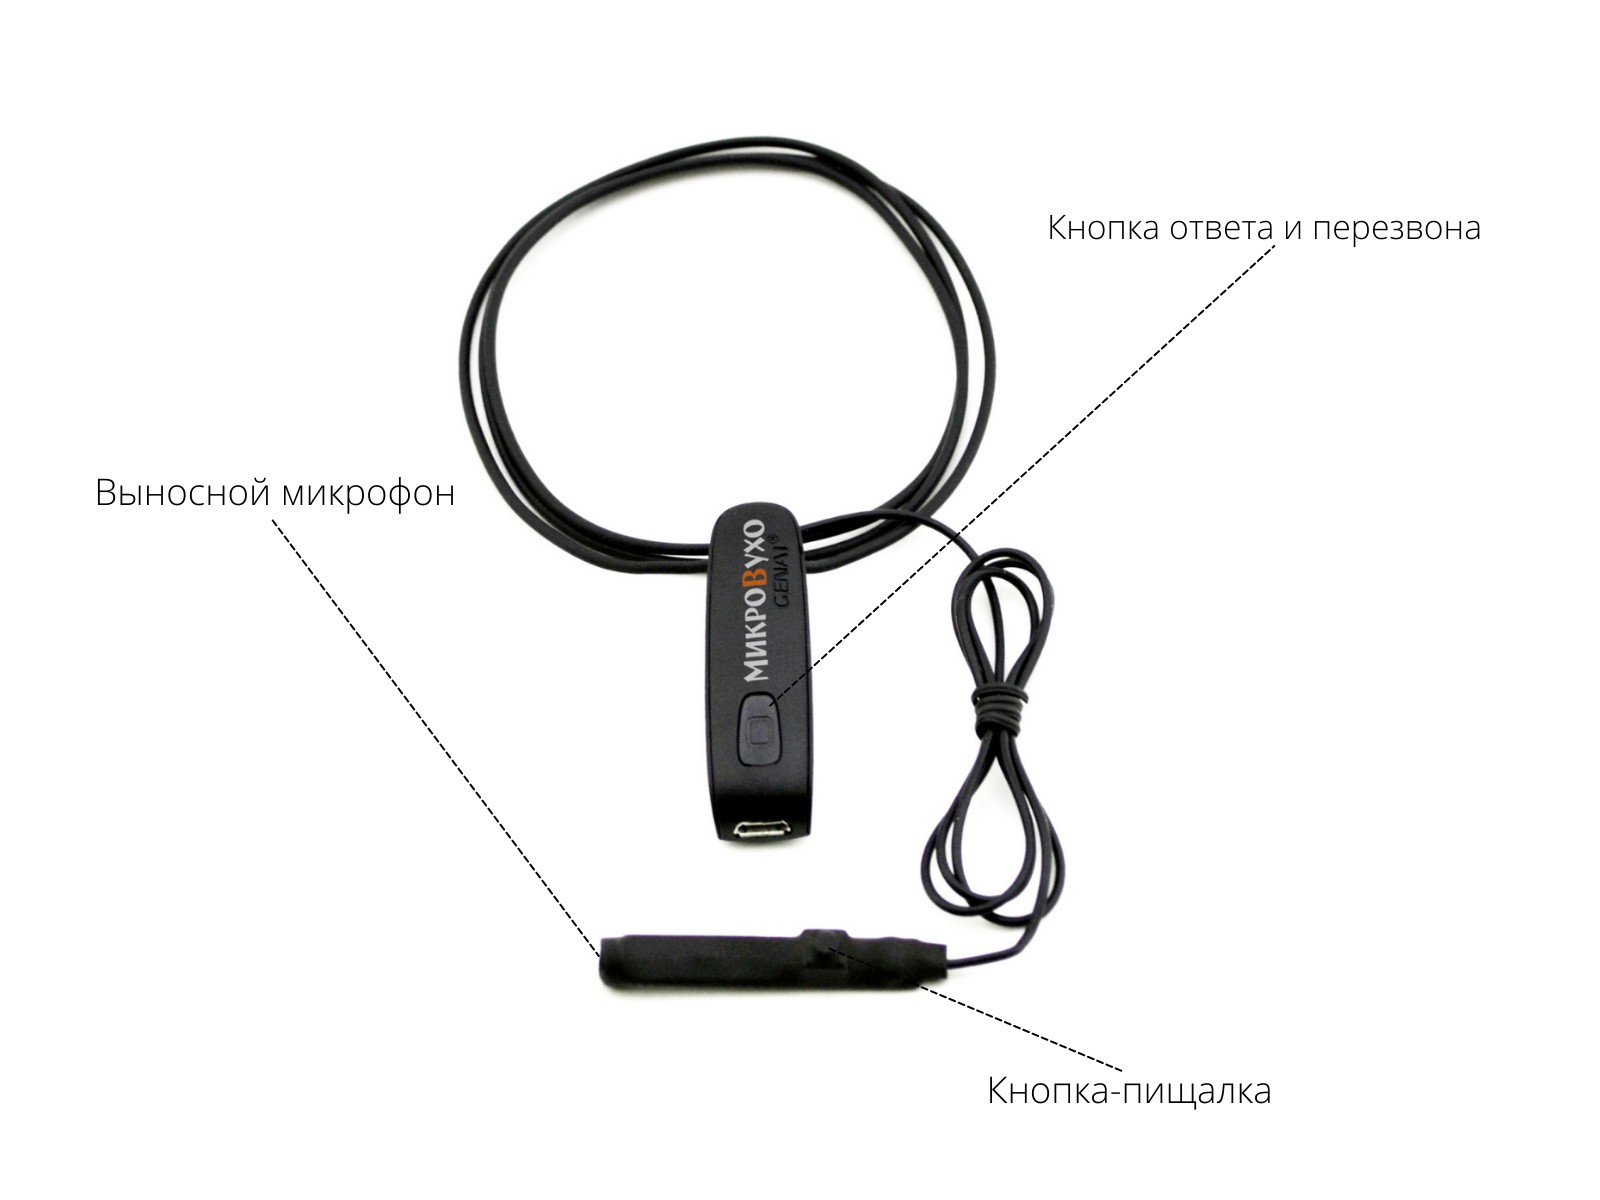 Гарнитура Bluetooth Basic с капсульным микронаушником Agger 10 мм 4